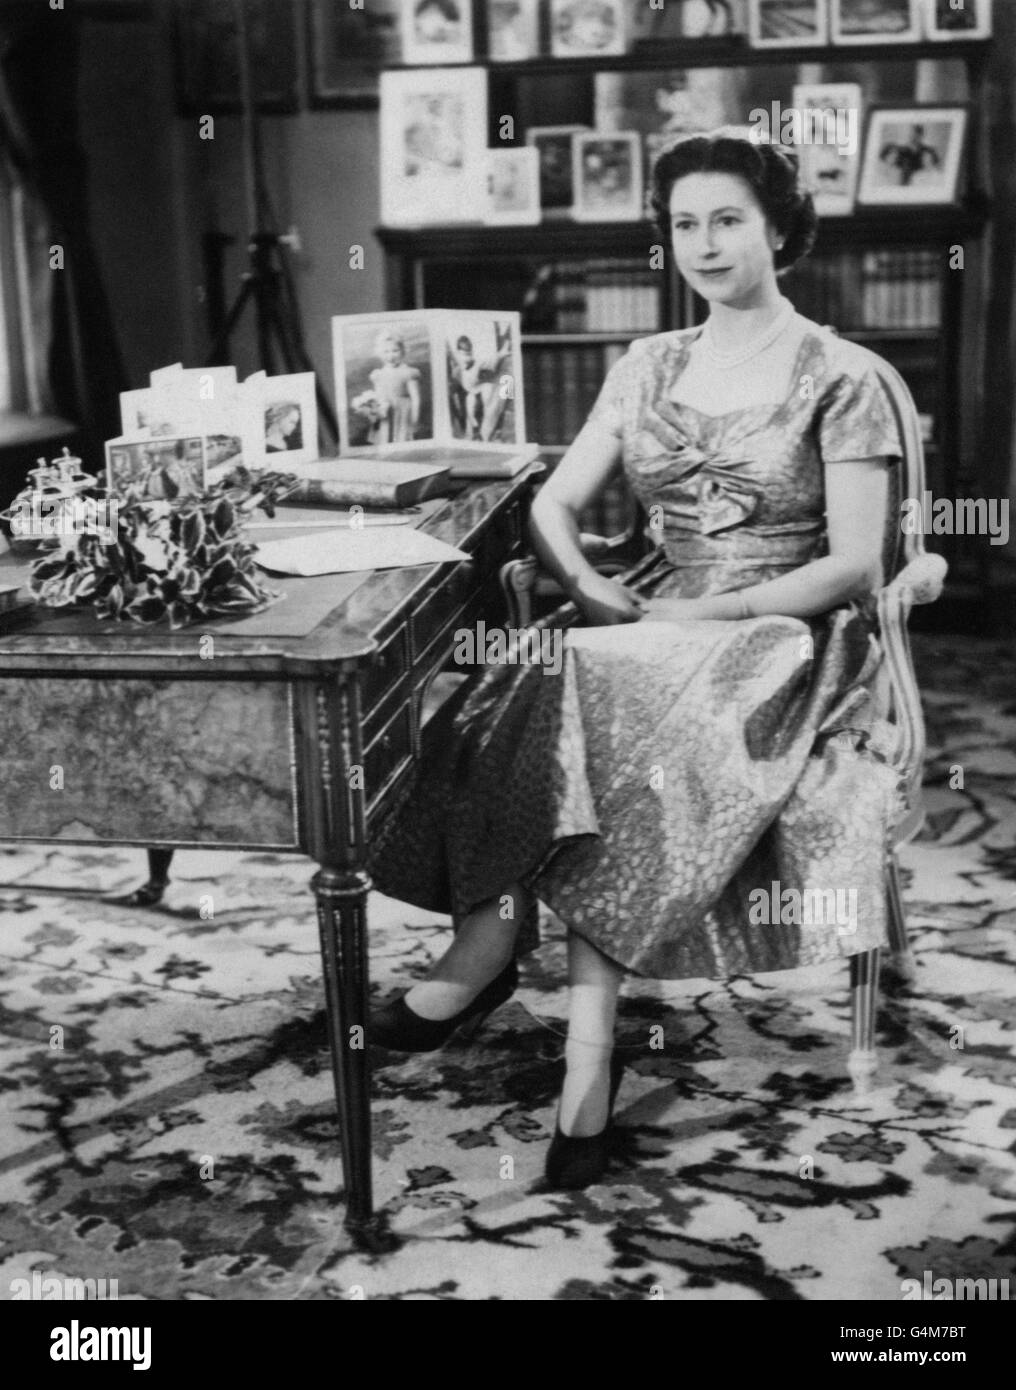 Die Königin, in einem goldgelähmten Kleid, wird in der Long Library in Sandringham kurz nach der Übertragung des traditionellen Weihnachtstages an ihre Völker gesehen. Auf dem Schreibtisch befinden sich Porträts von Prinz Charles und Prinzessin Anne. Die Sendung wurde zum ersten Mal im Fernsehen übertragen und sowohl von der BBC als auch von ITV übertragen. Es war der 25. Jahrestag der ersten Radiobotschaft ihres Großvaters, König George V. an den Commonwealth Stockfoto